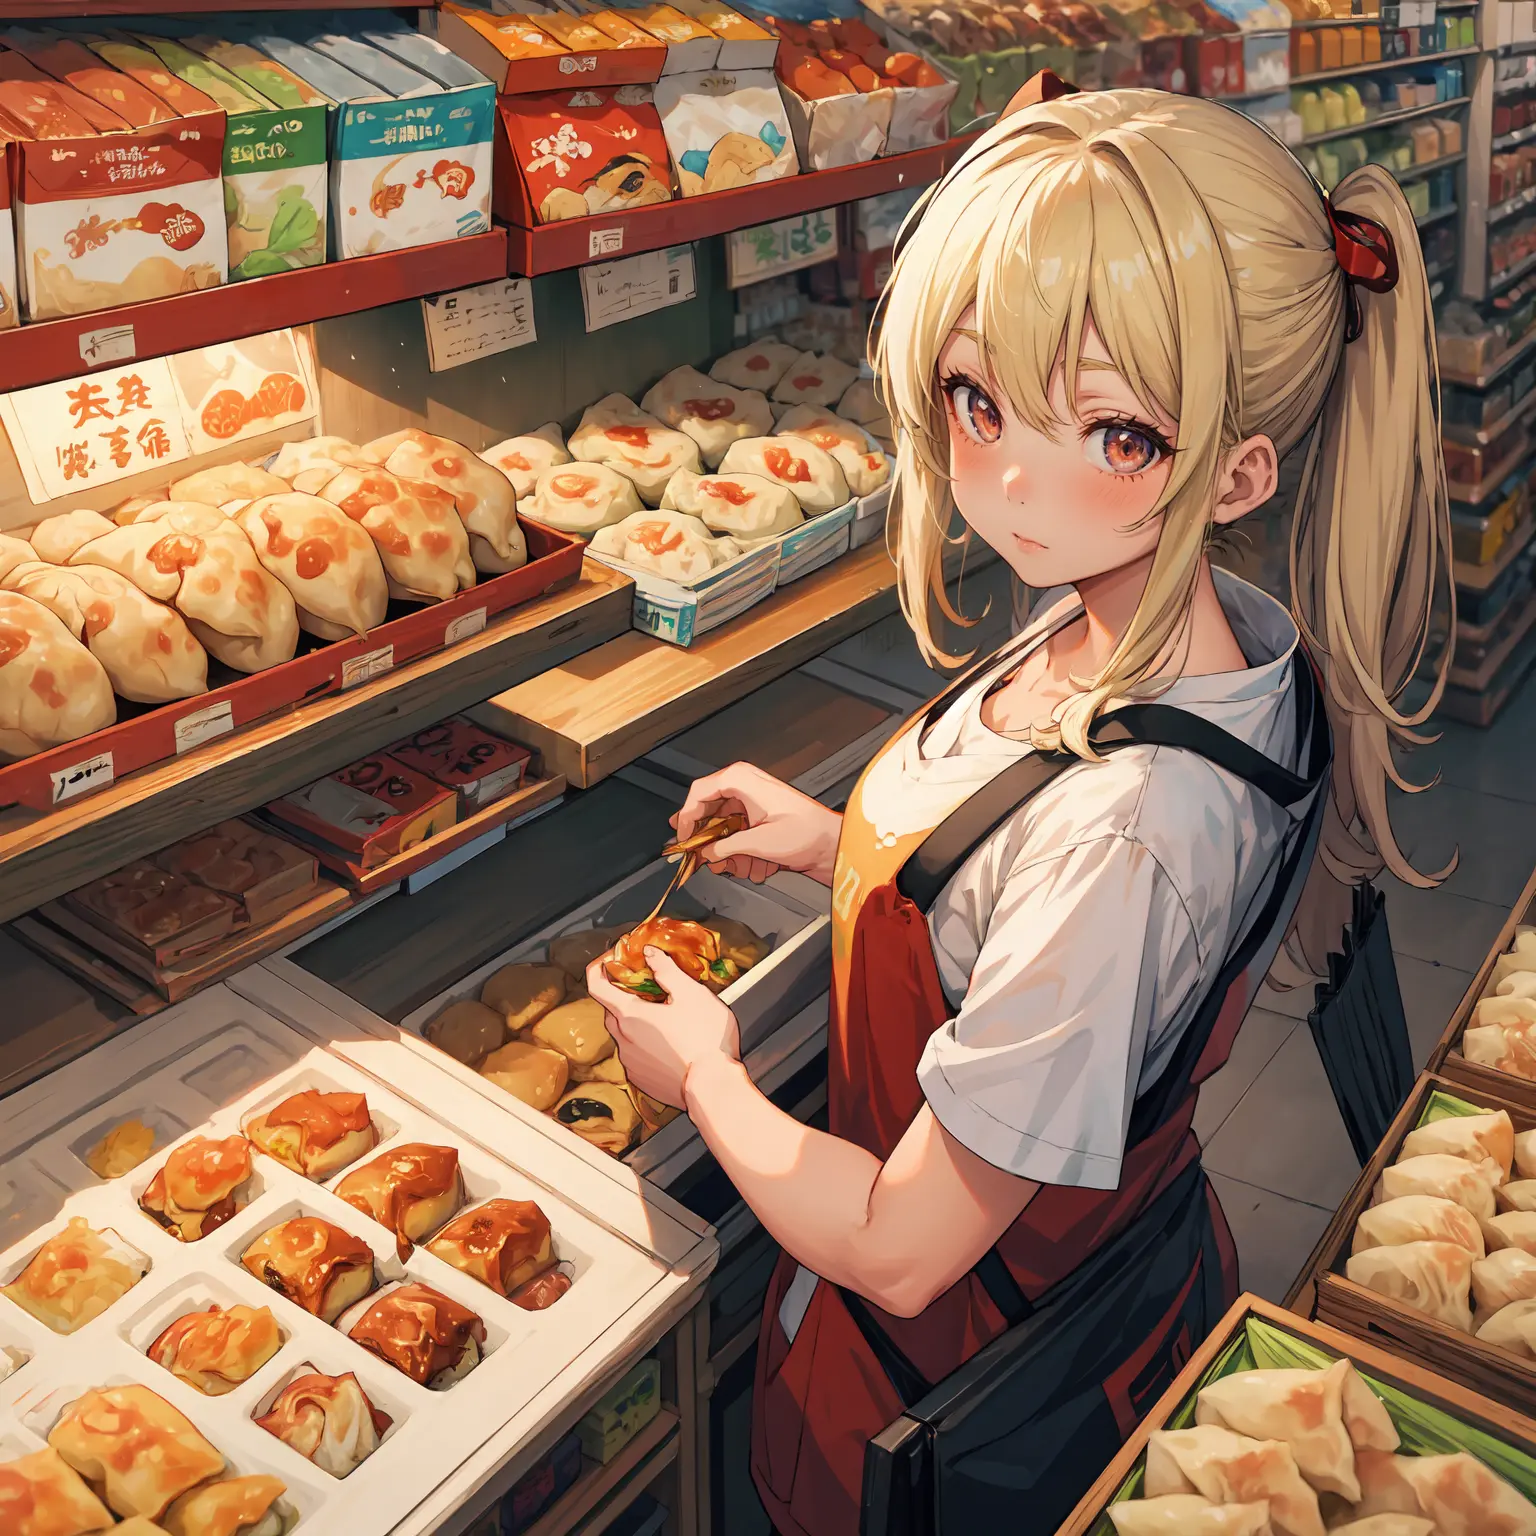 (melhor qualidade:1.4), anime, Sozinho, Uma menina no supermercado gyoza bolinhos jiaozi